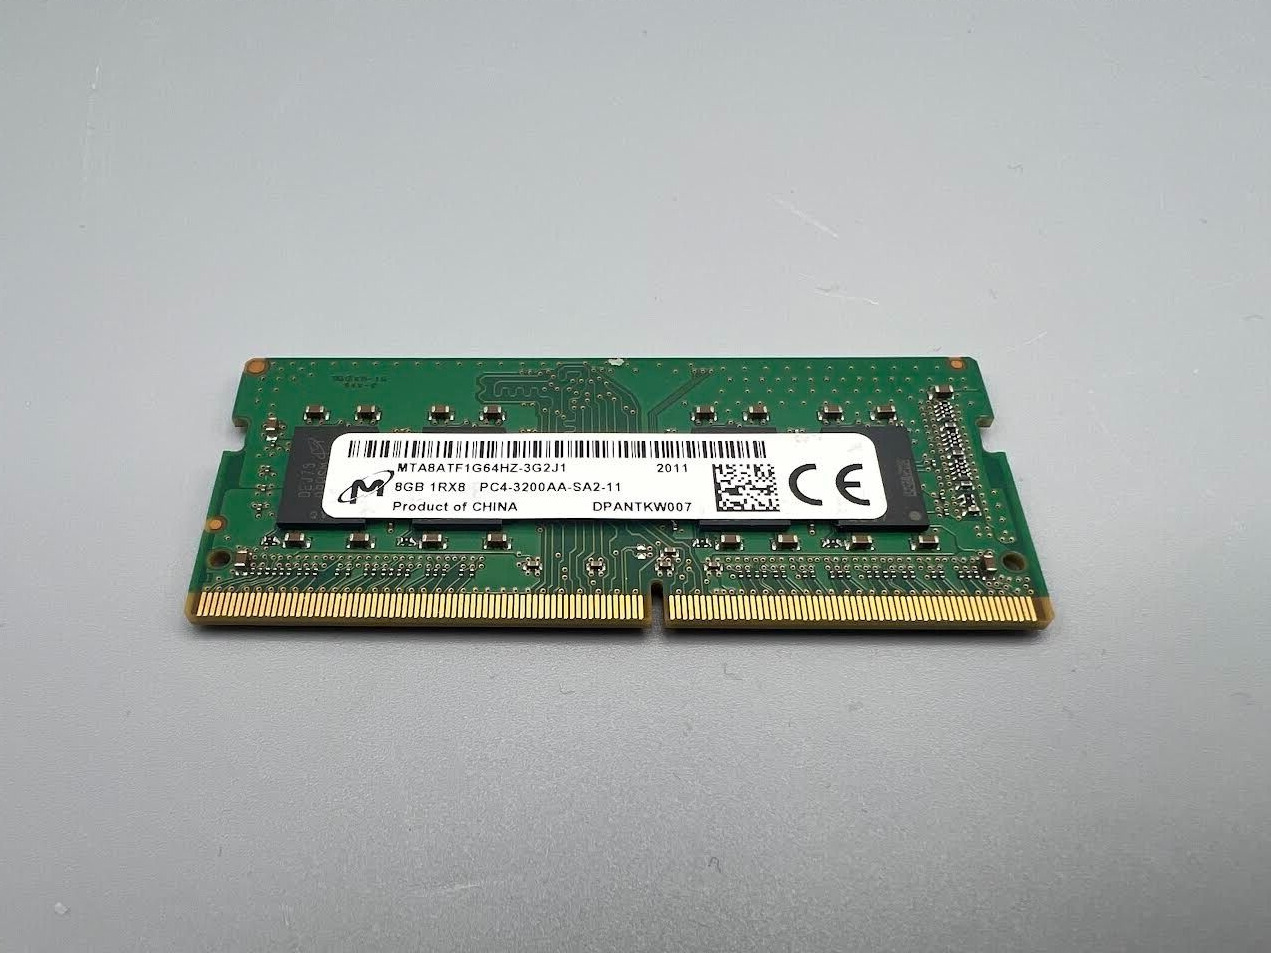 Micron MTA8ATF1G64HZ-3G2J1 PC4-3200AA-SA2-11 8GB 1RX8 DDR4 SDRAM Memory Card